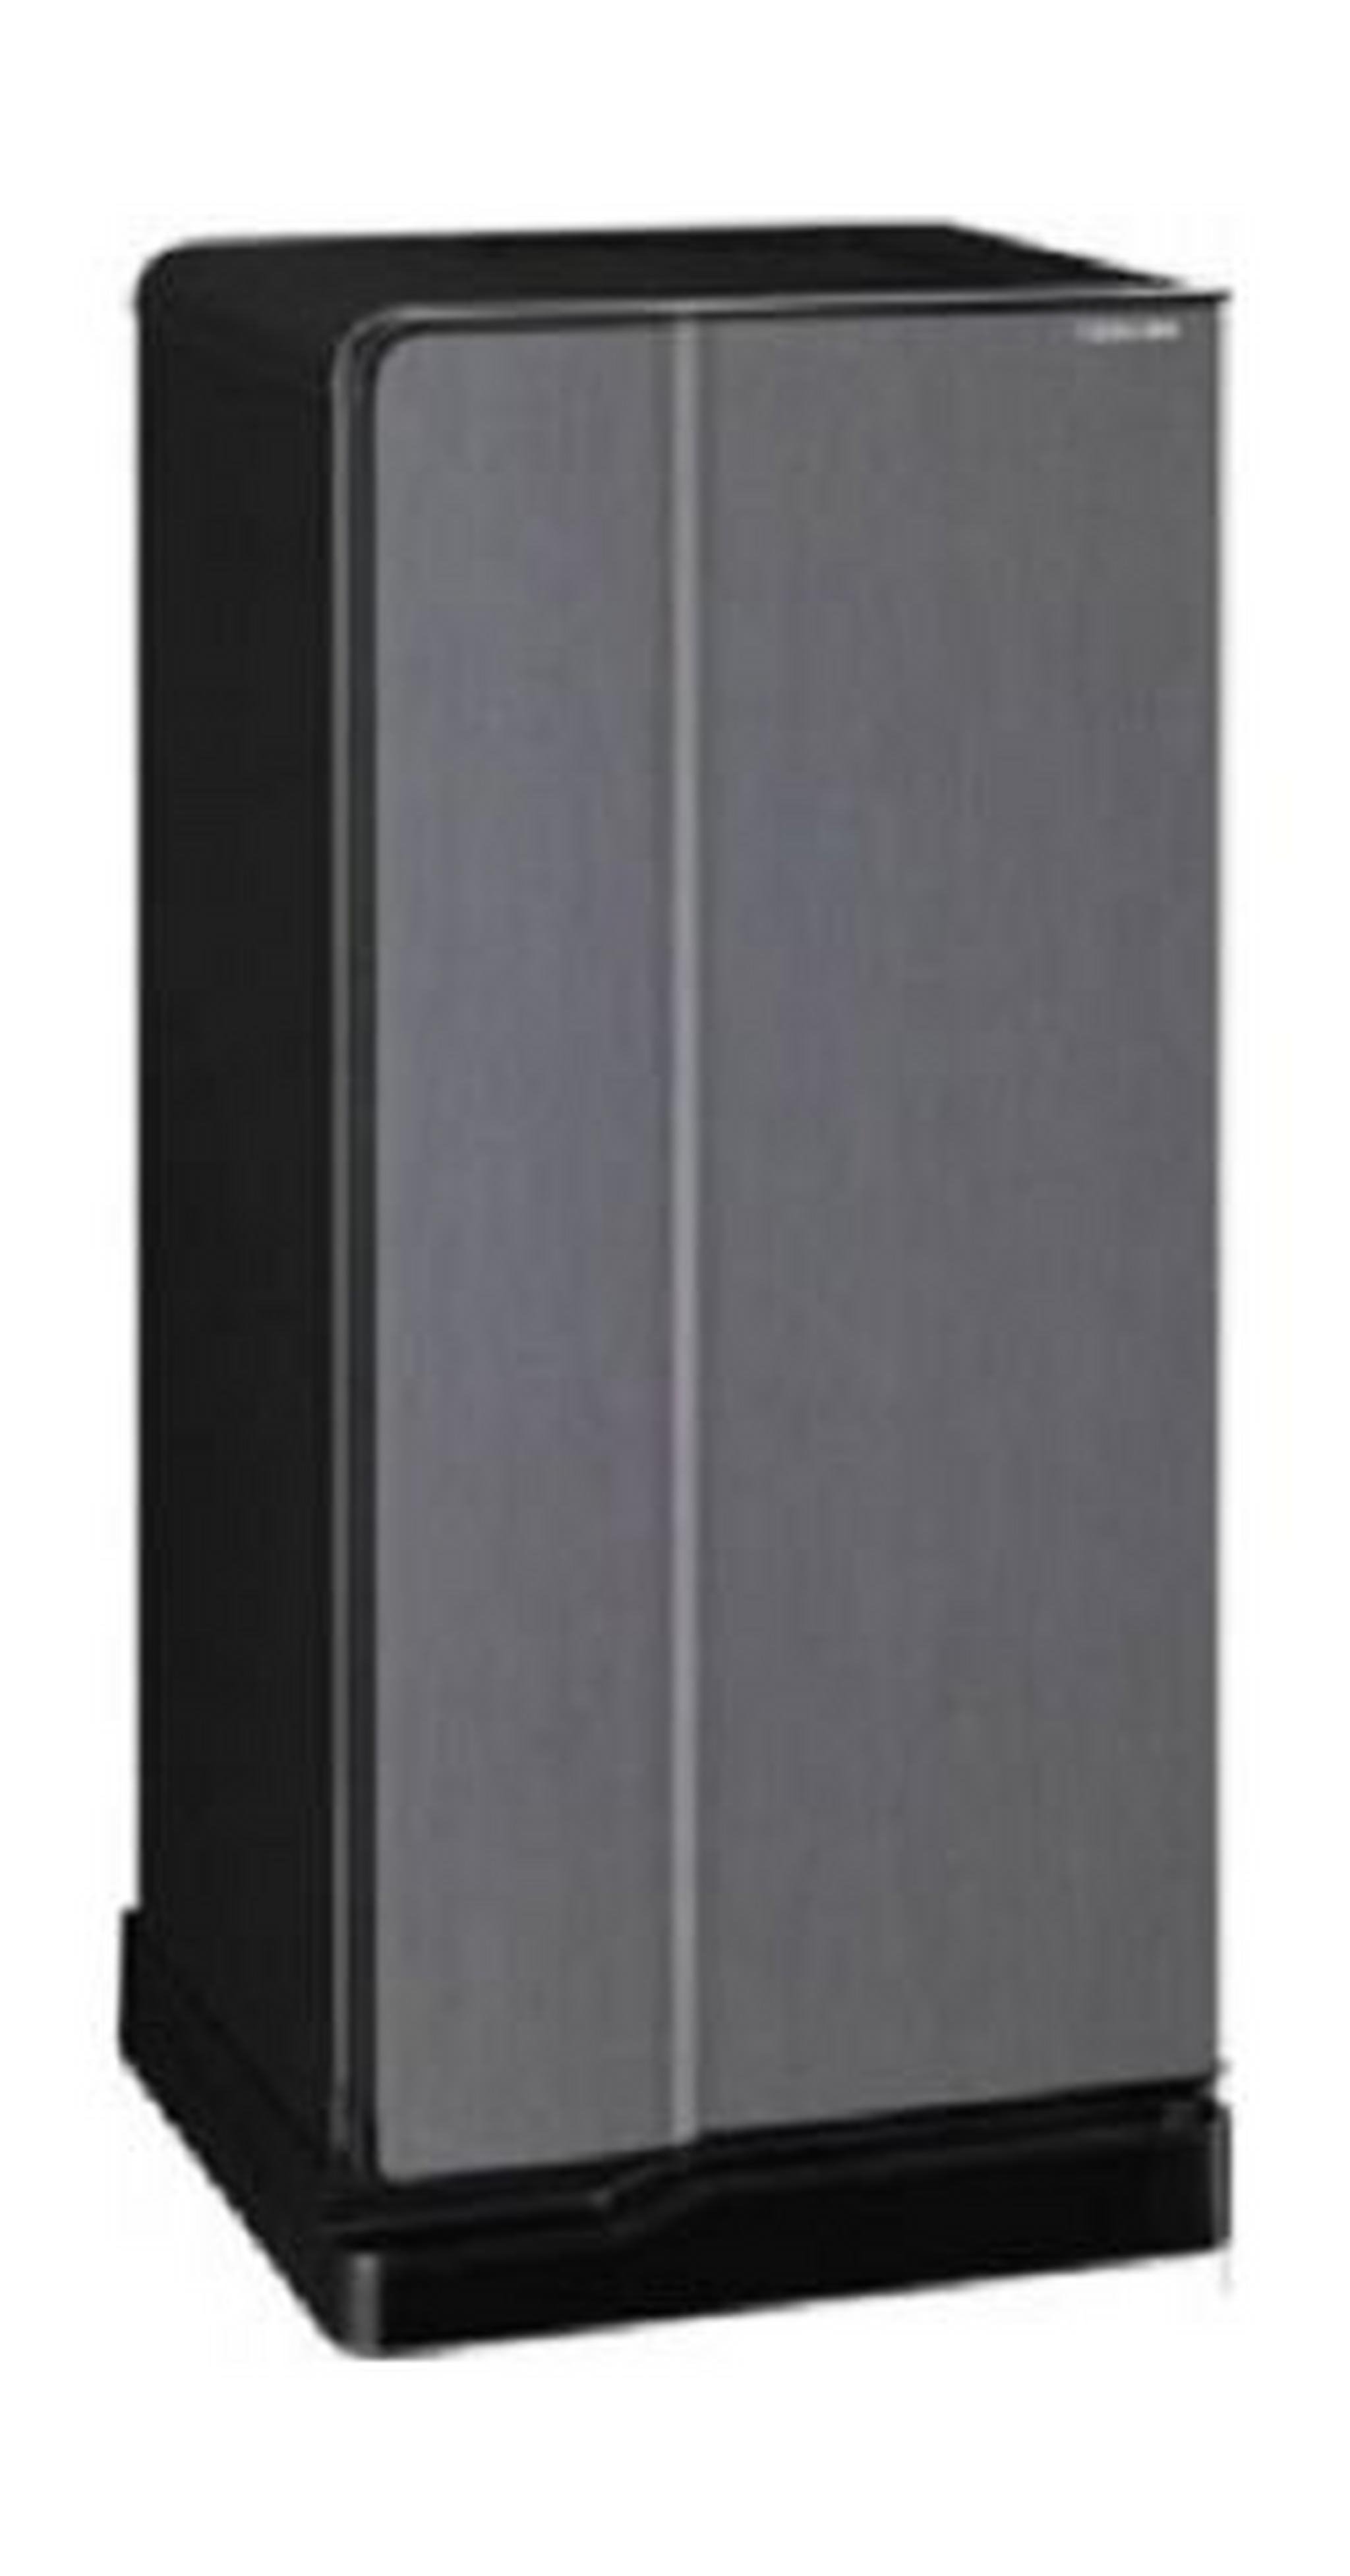 Toshiba 6.4 Cft. Single Door Refrigerator (GRE1837) - Grey